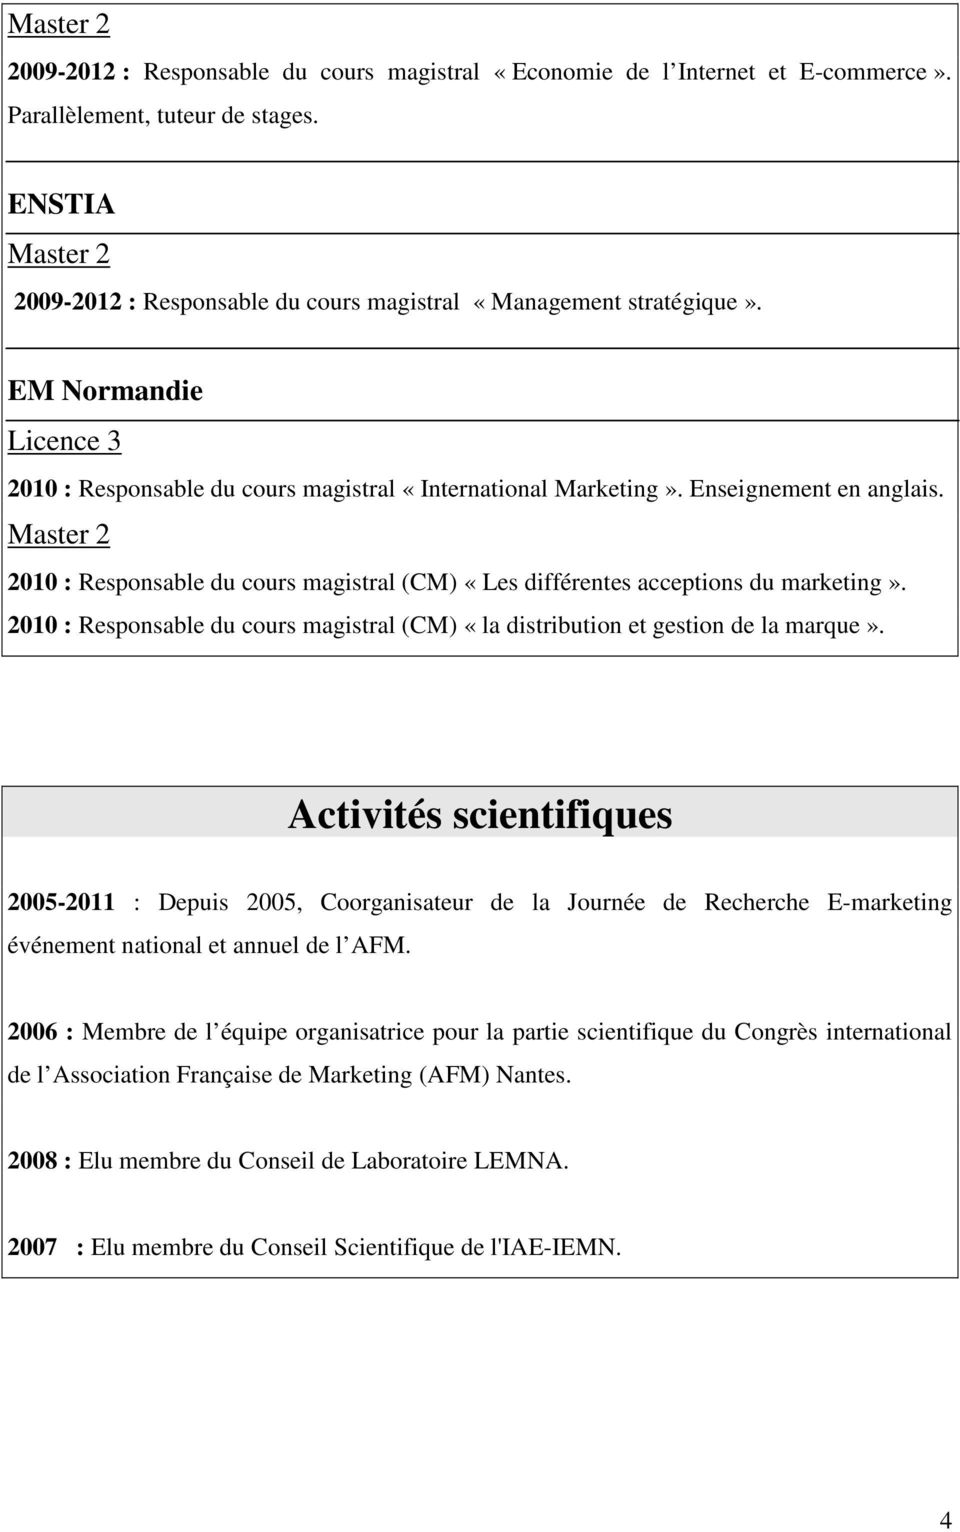 2010 : Responsable du cours magistral (CM) «la distribution et gestion de la marque».